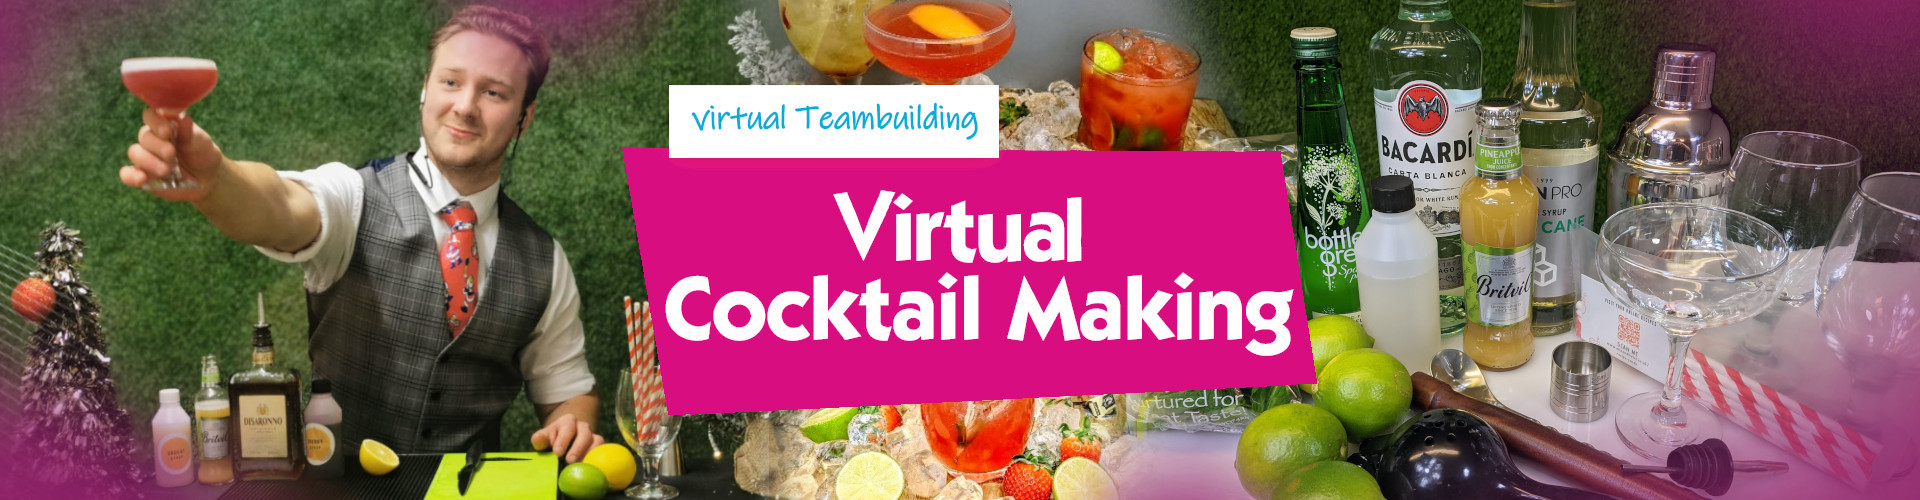 Virtual Cocktail Making - Banner